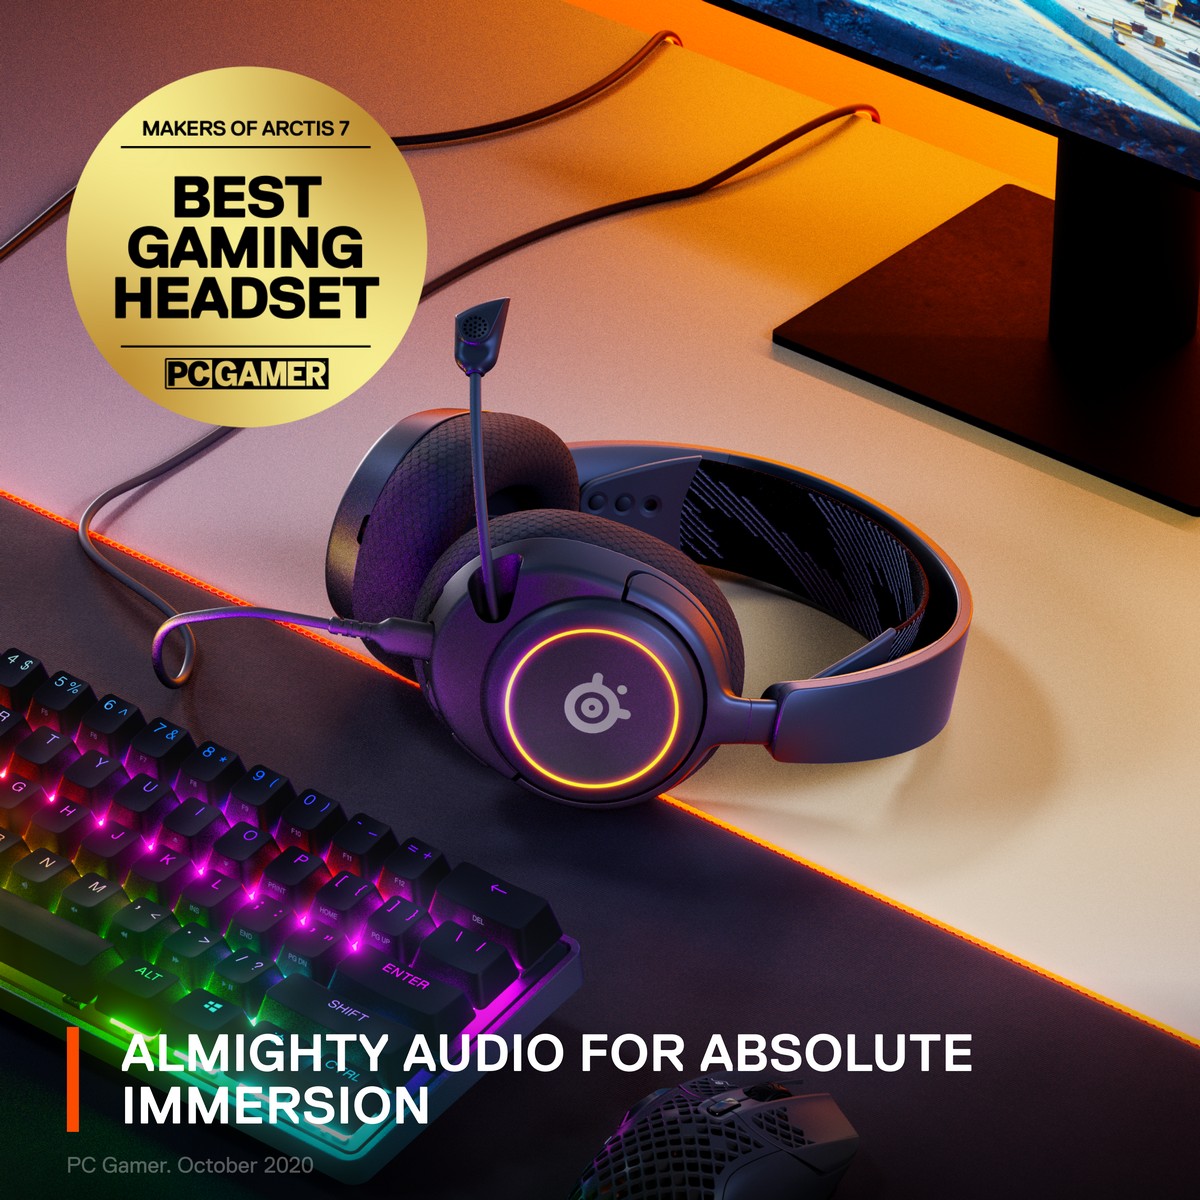 SteelSeries - SteelSeries Arctis Nova 3 Gaming Headset - Black (61631)